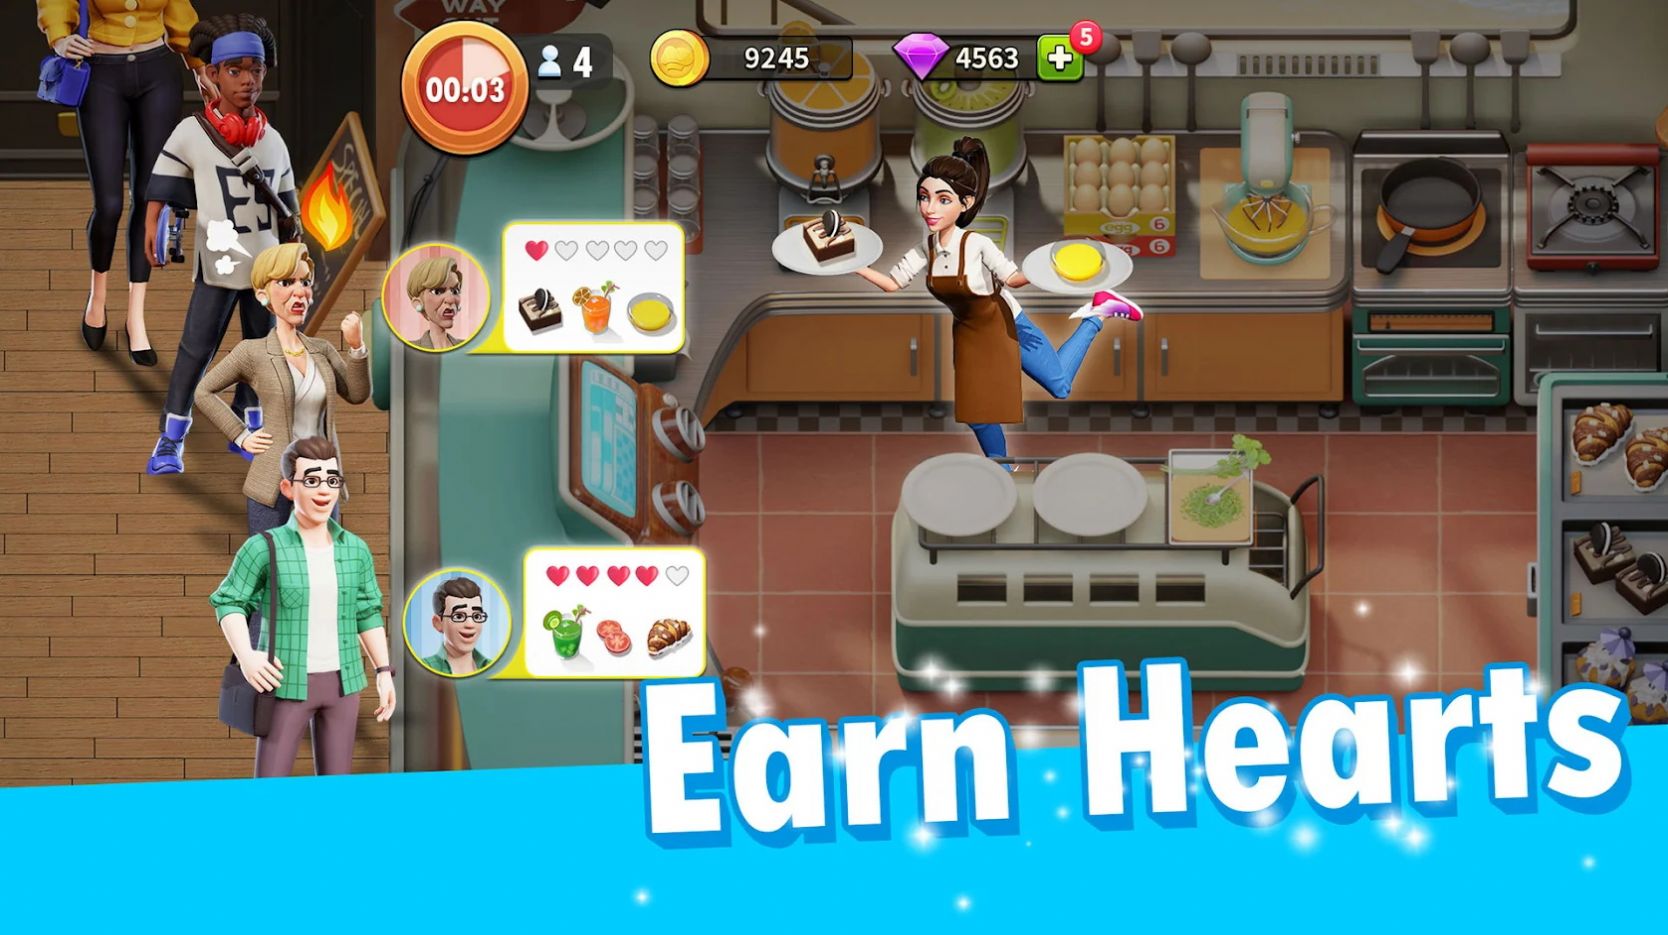 模拟厨房烹饪3d游戏截图